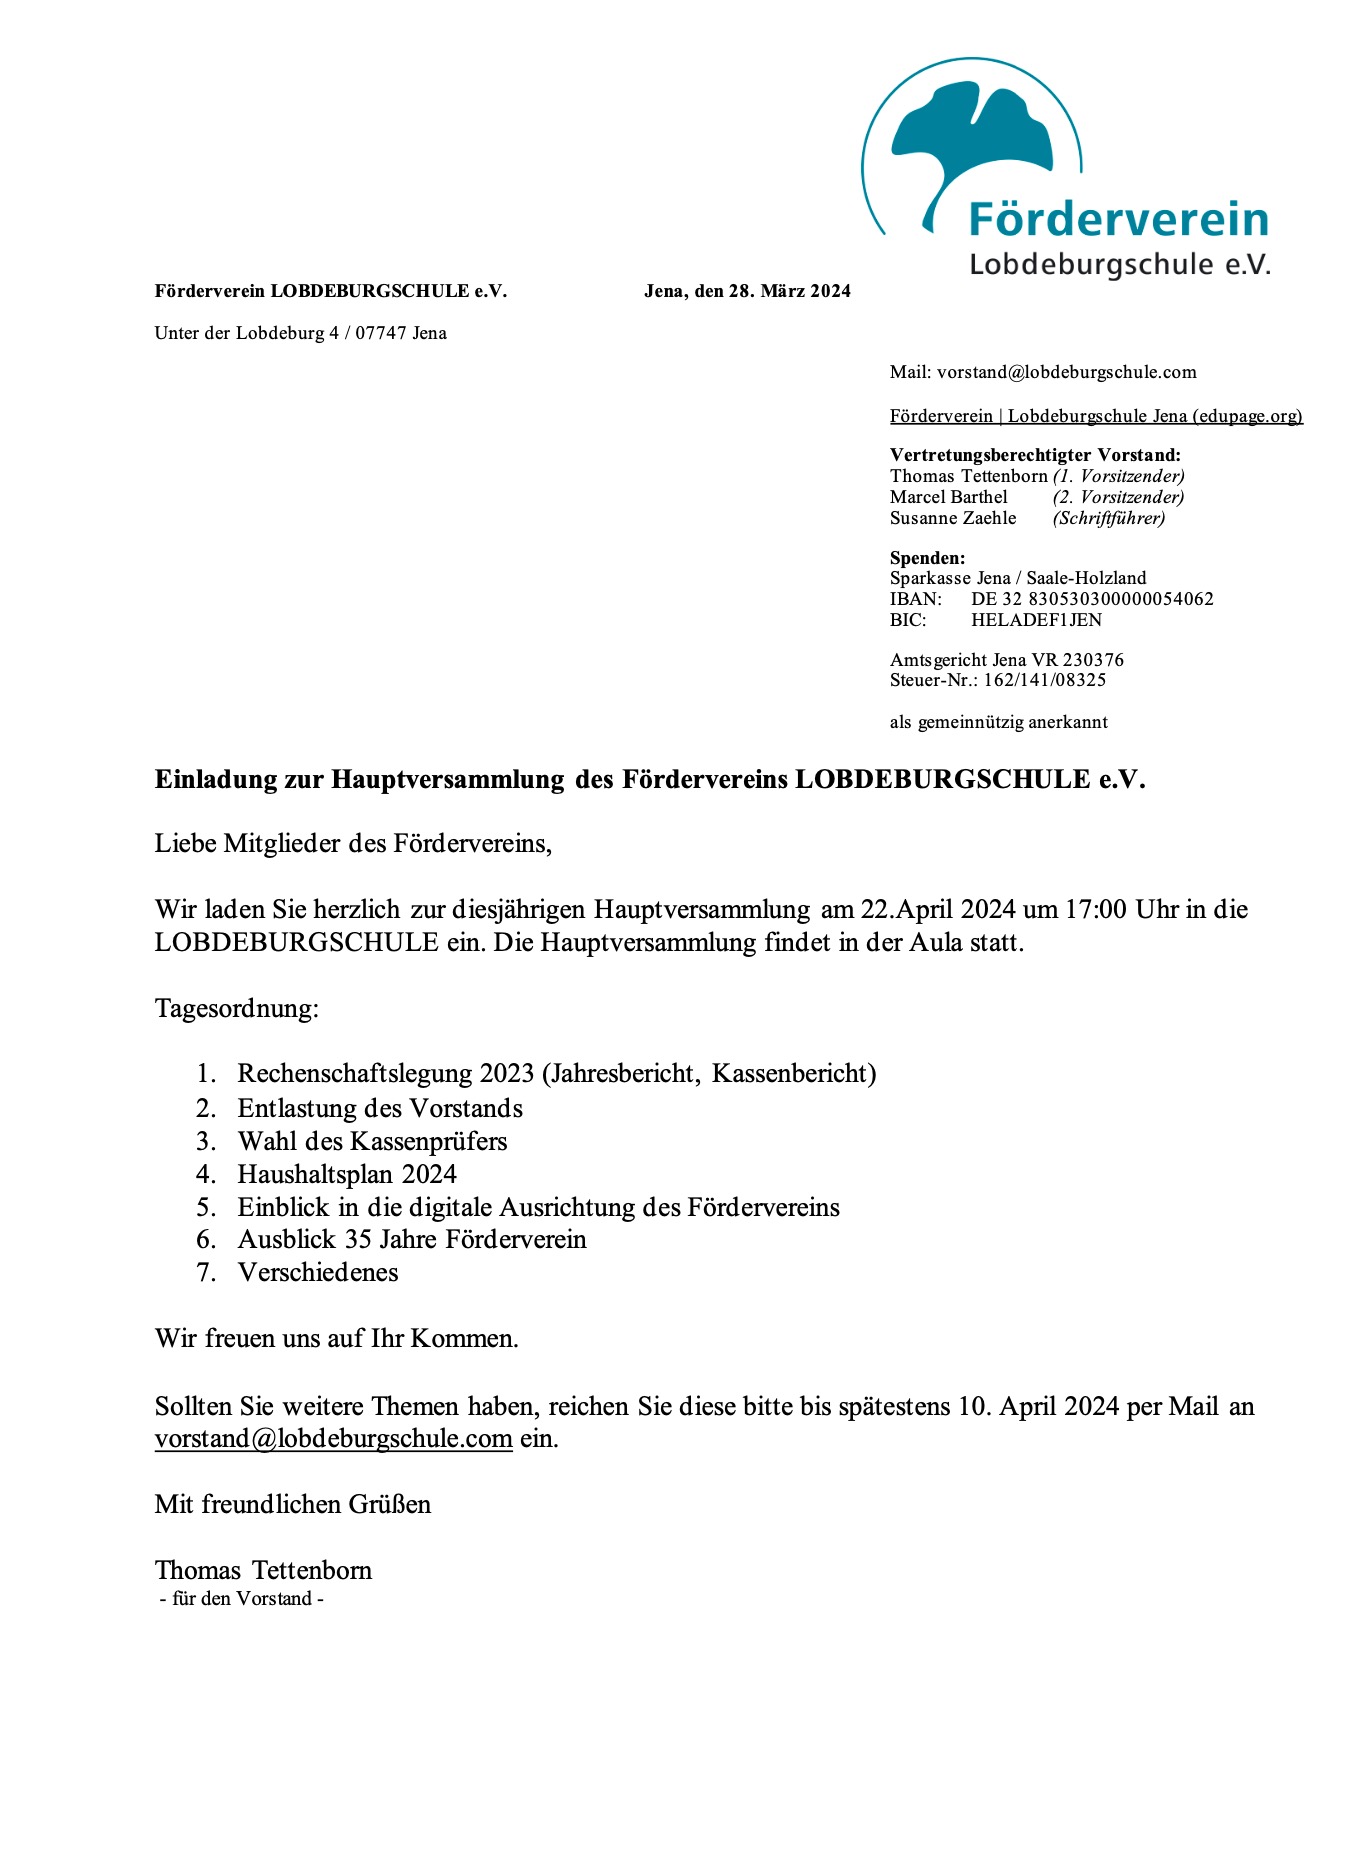 Förderverein - Einladung zur Hauptversammlung - Bild 1